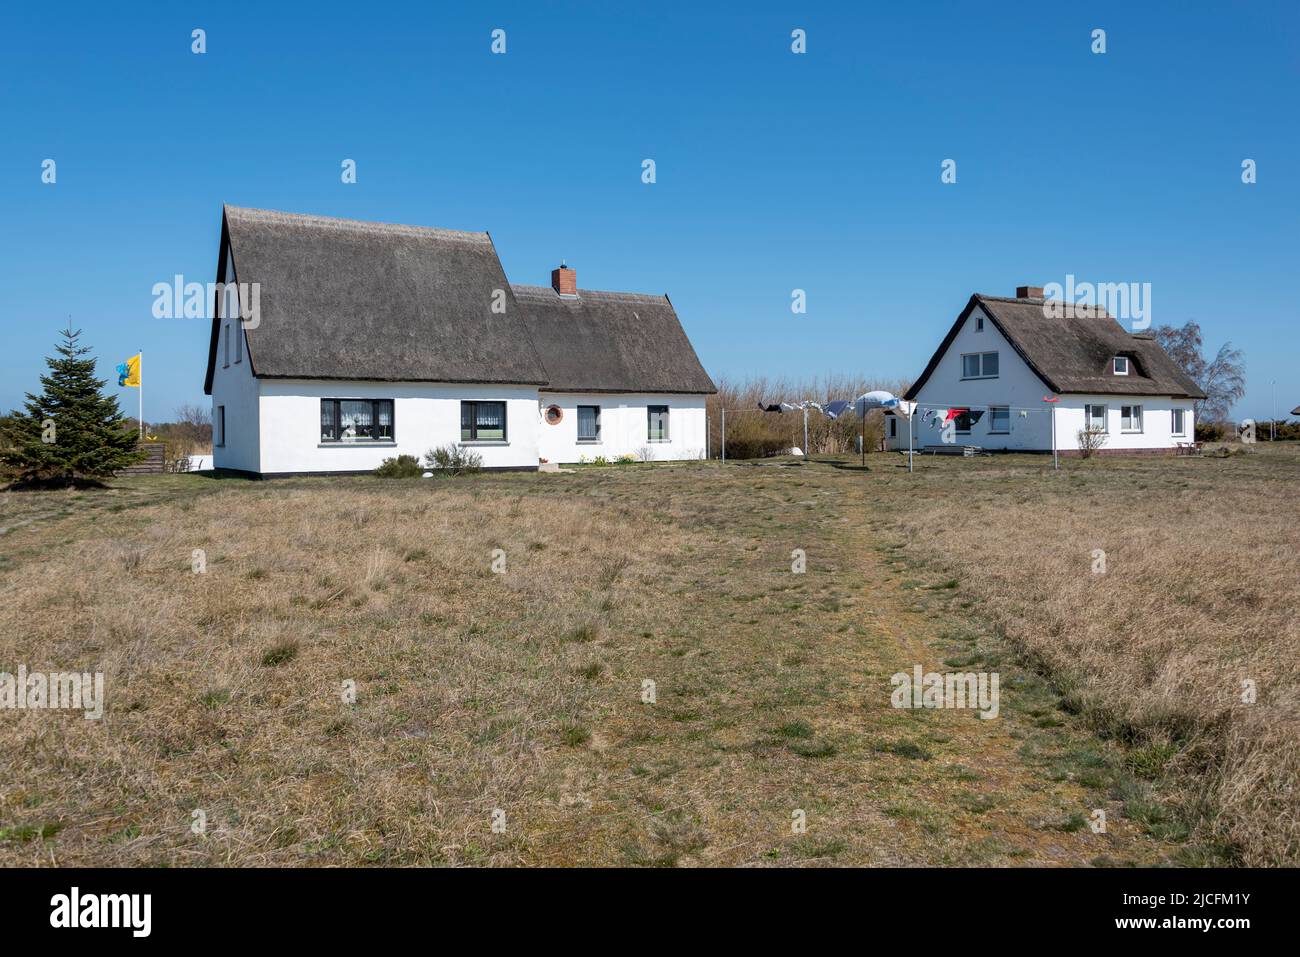 Lavoir au vent, maisons en chaume, Neuendorf, Île de Hiddensee, Mecklenburg-Ouest Pomerania, Allemagne Banque D'Images